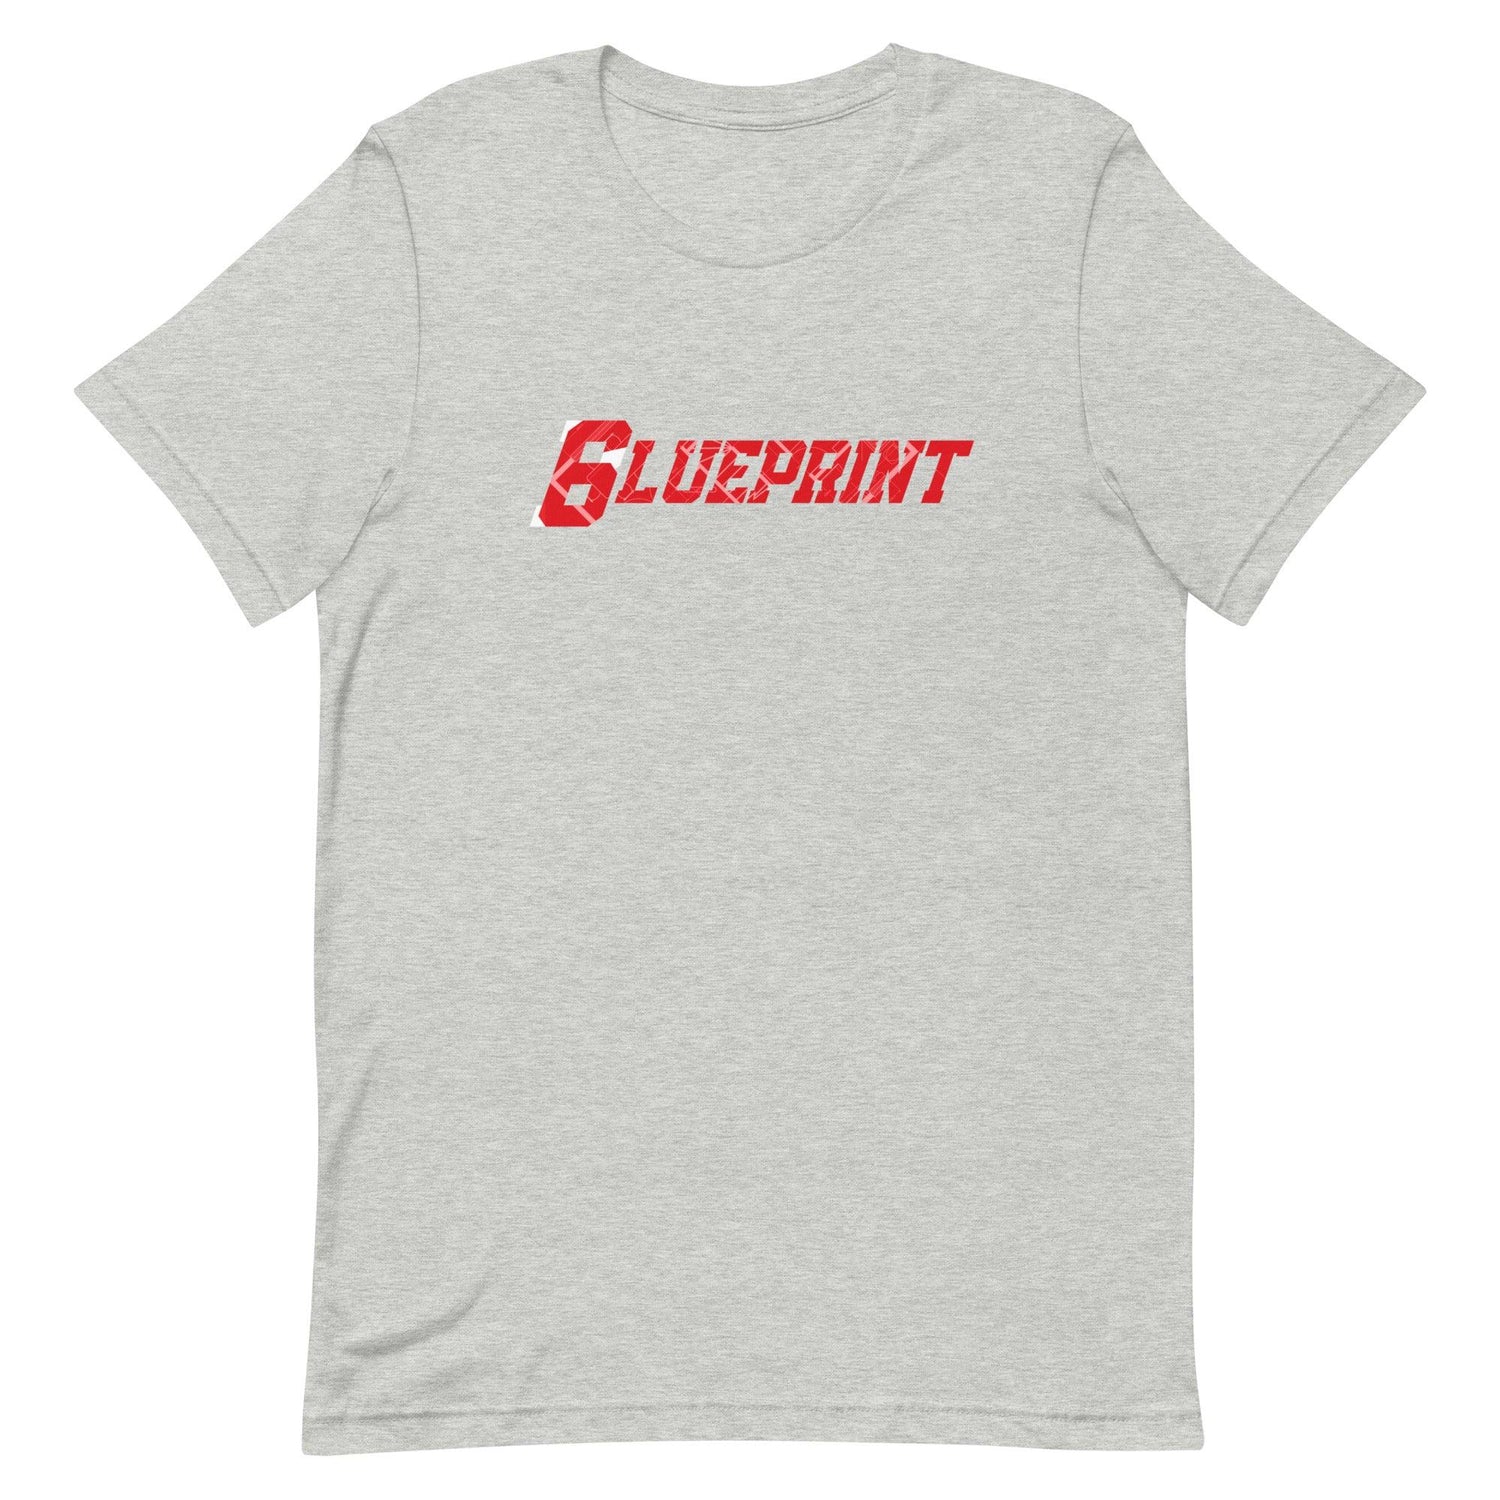 Kenny McIntosh "6lueprint" t-shirt - Fan Arch